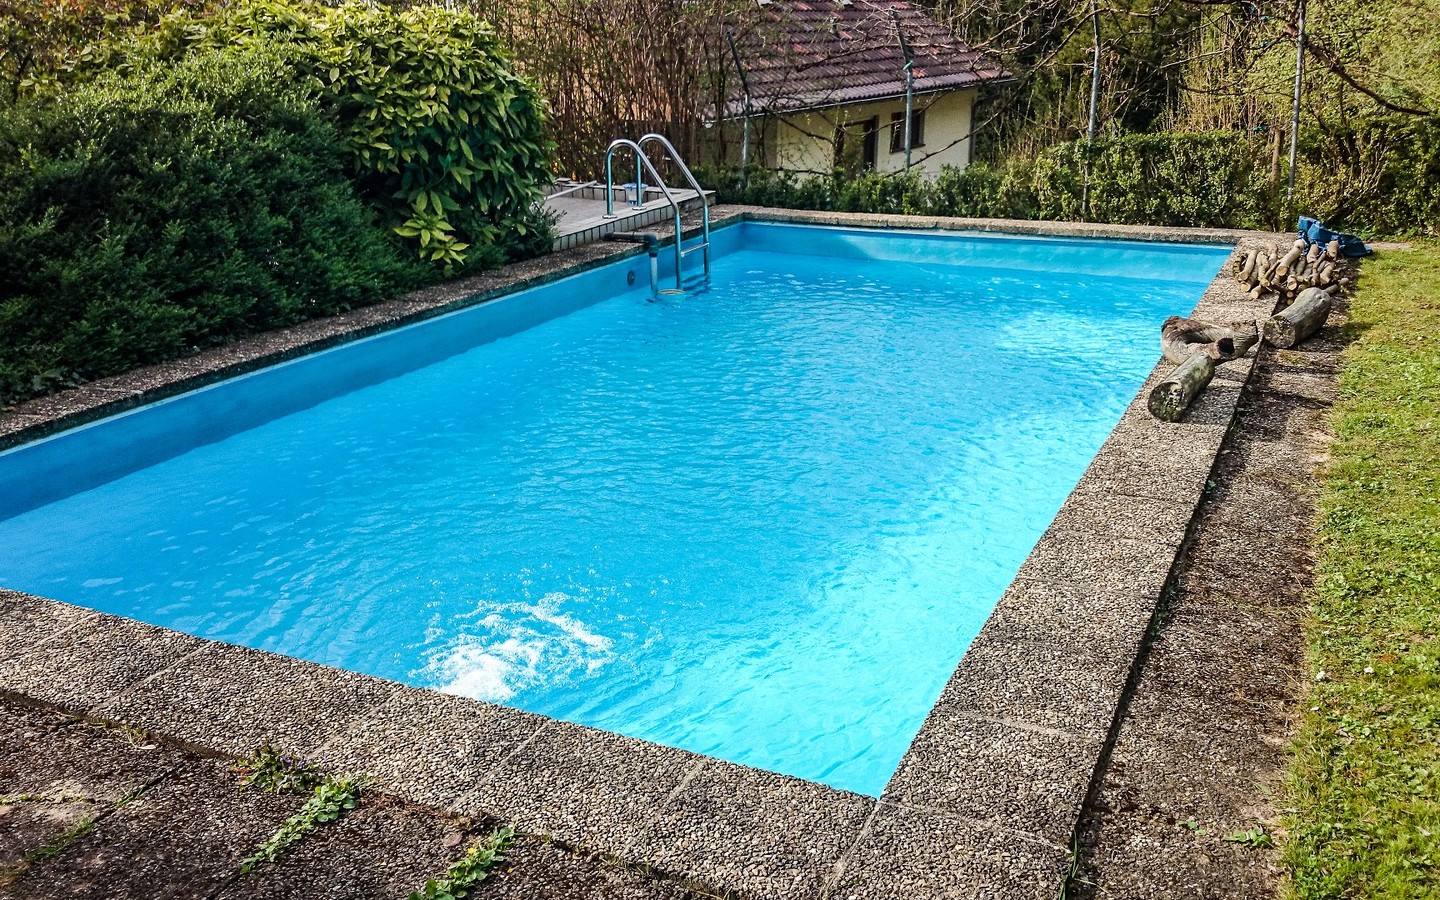 Schwimmbecken - Genau das Richtige Zuhause für Paare oder Familien mit Kindern.